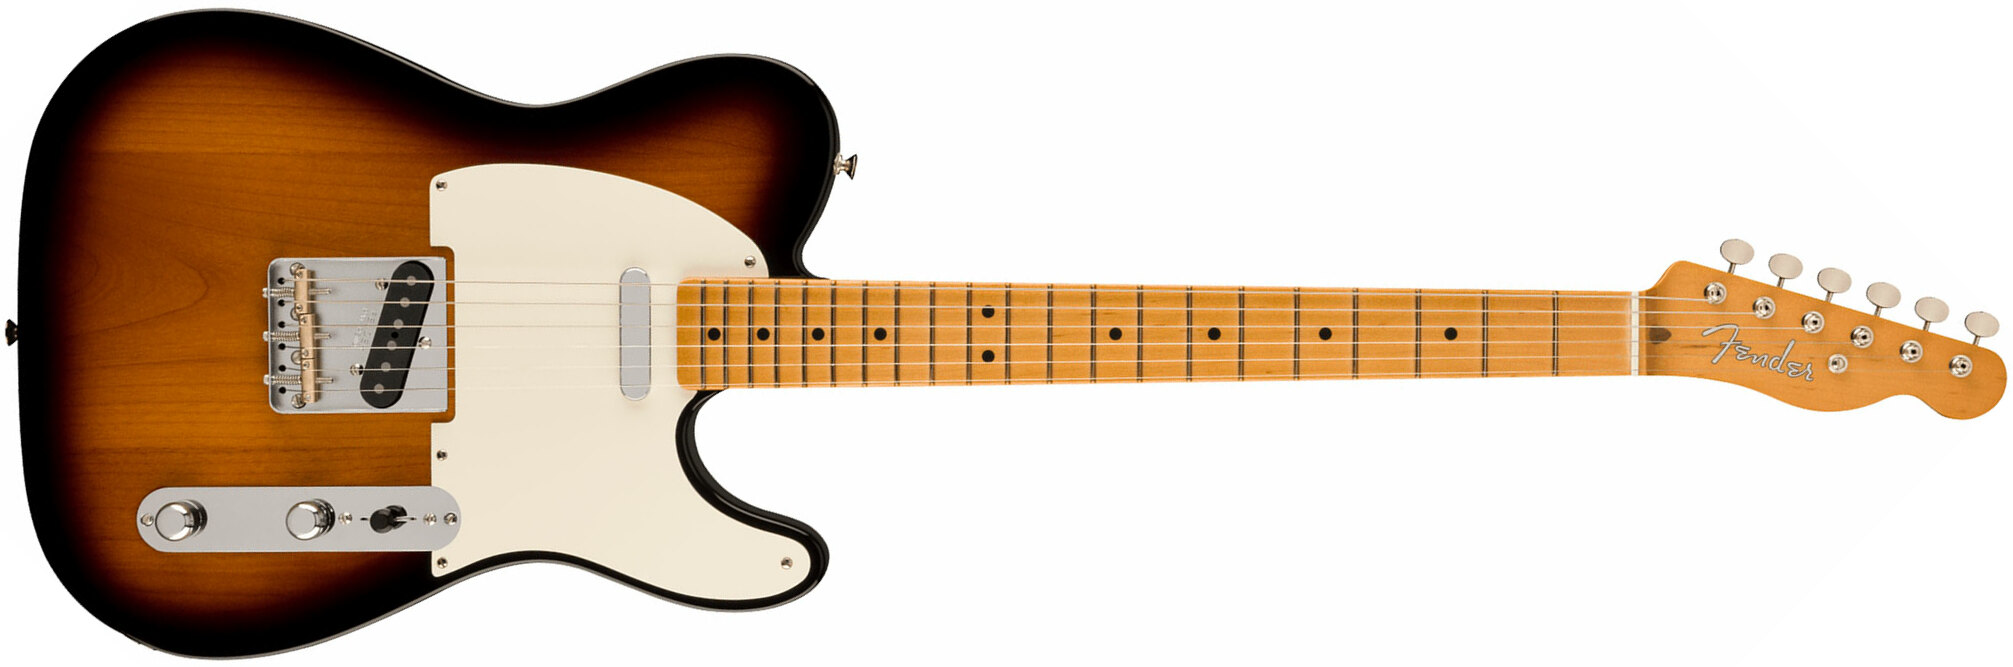 Fender Tele Nocaster 50s Vintera 2 Mex 2s Ht Mn - 2-color Sunburst - E-Gitarre in Teleform - Main picture